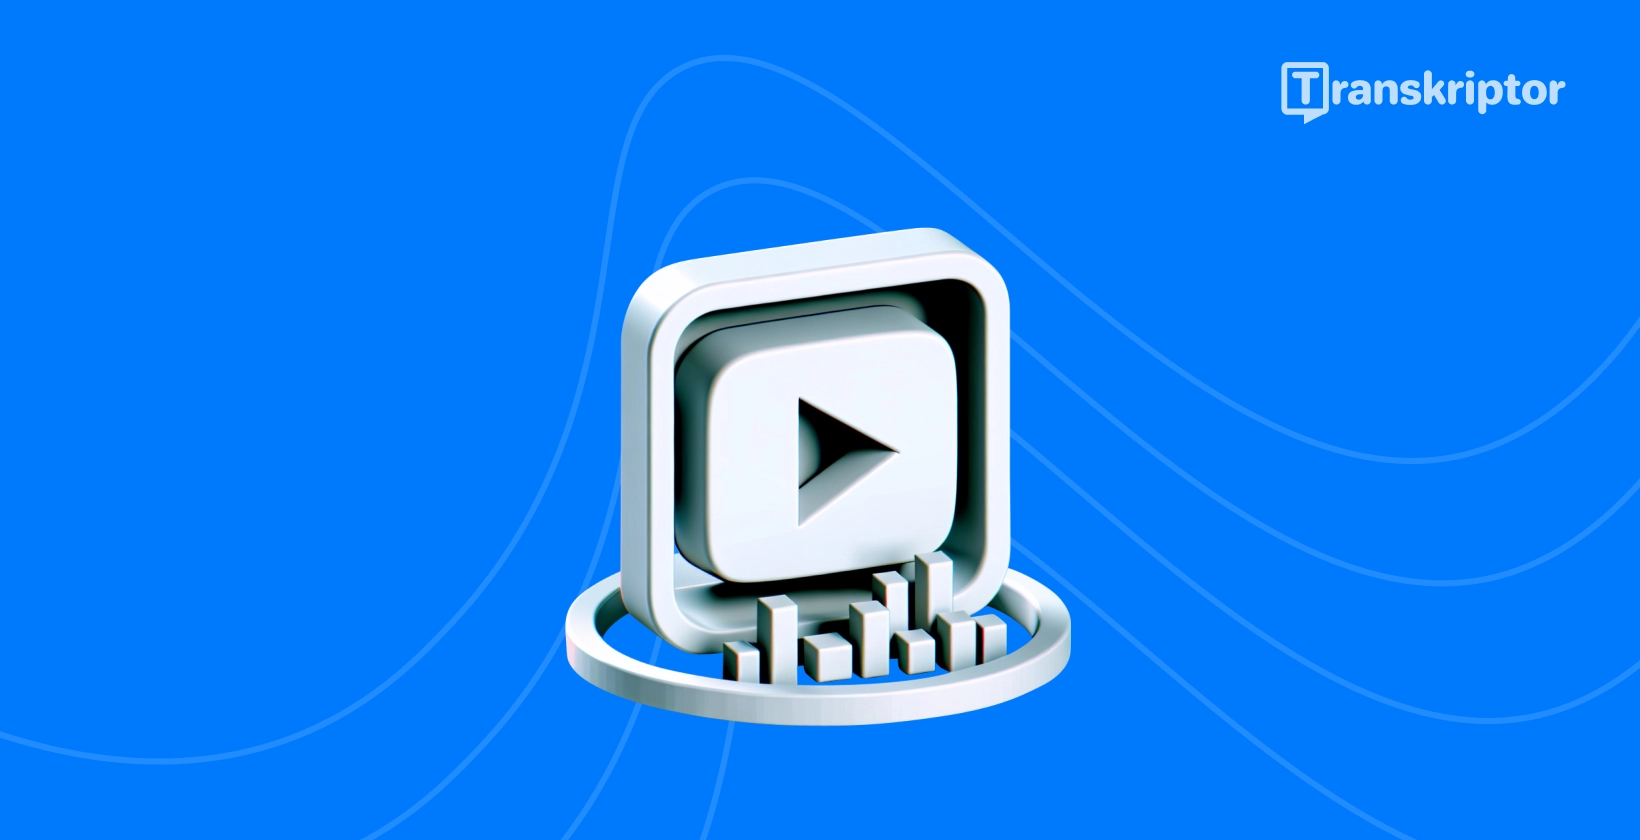 Butang Main dan kaedah penggambaran visual transkripsi untuk menyalin video YouTube dengan berkesan.